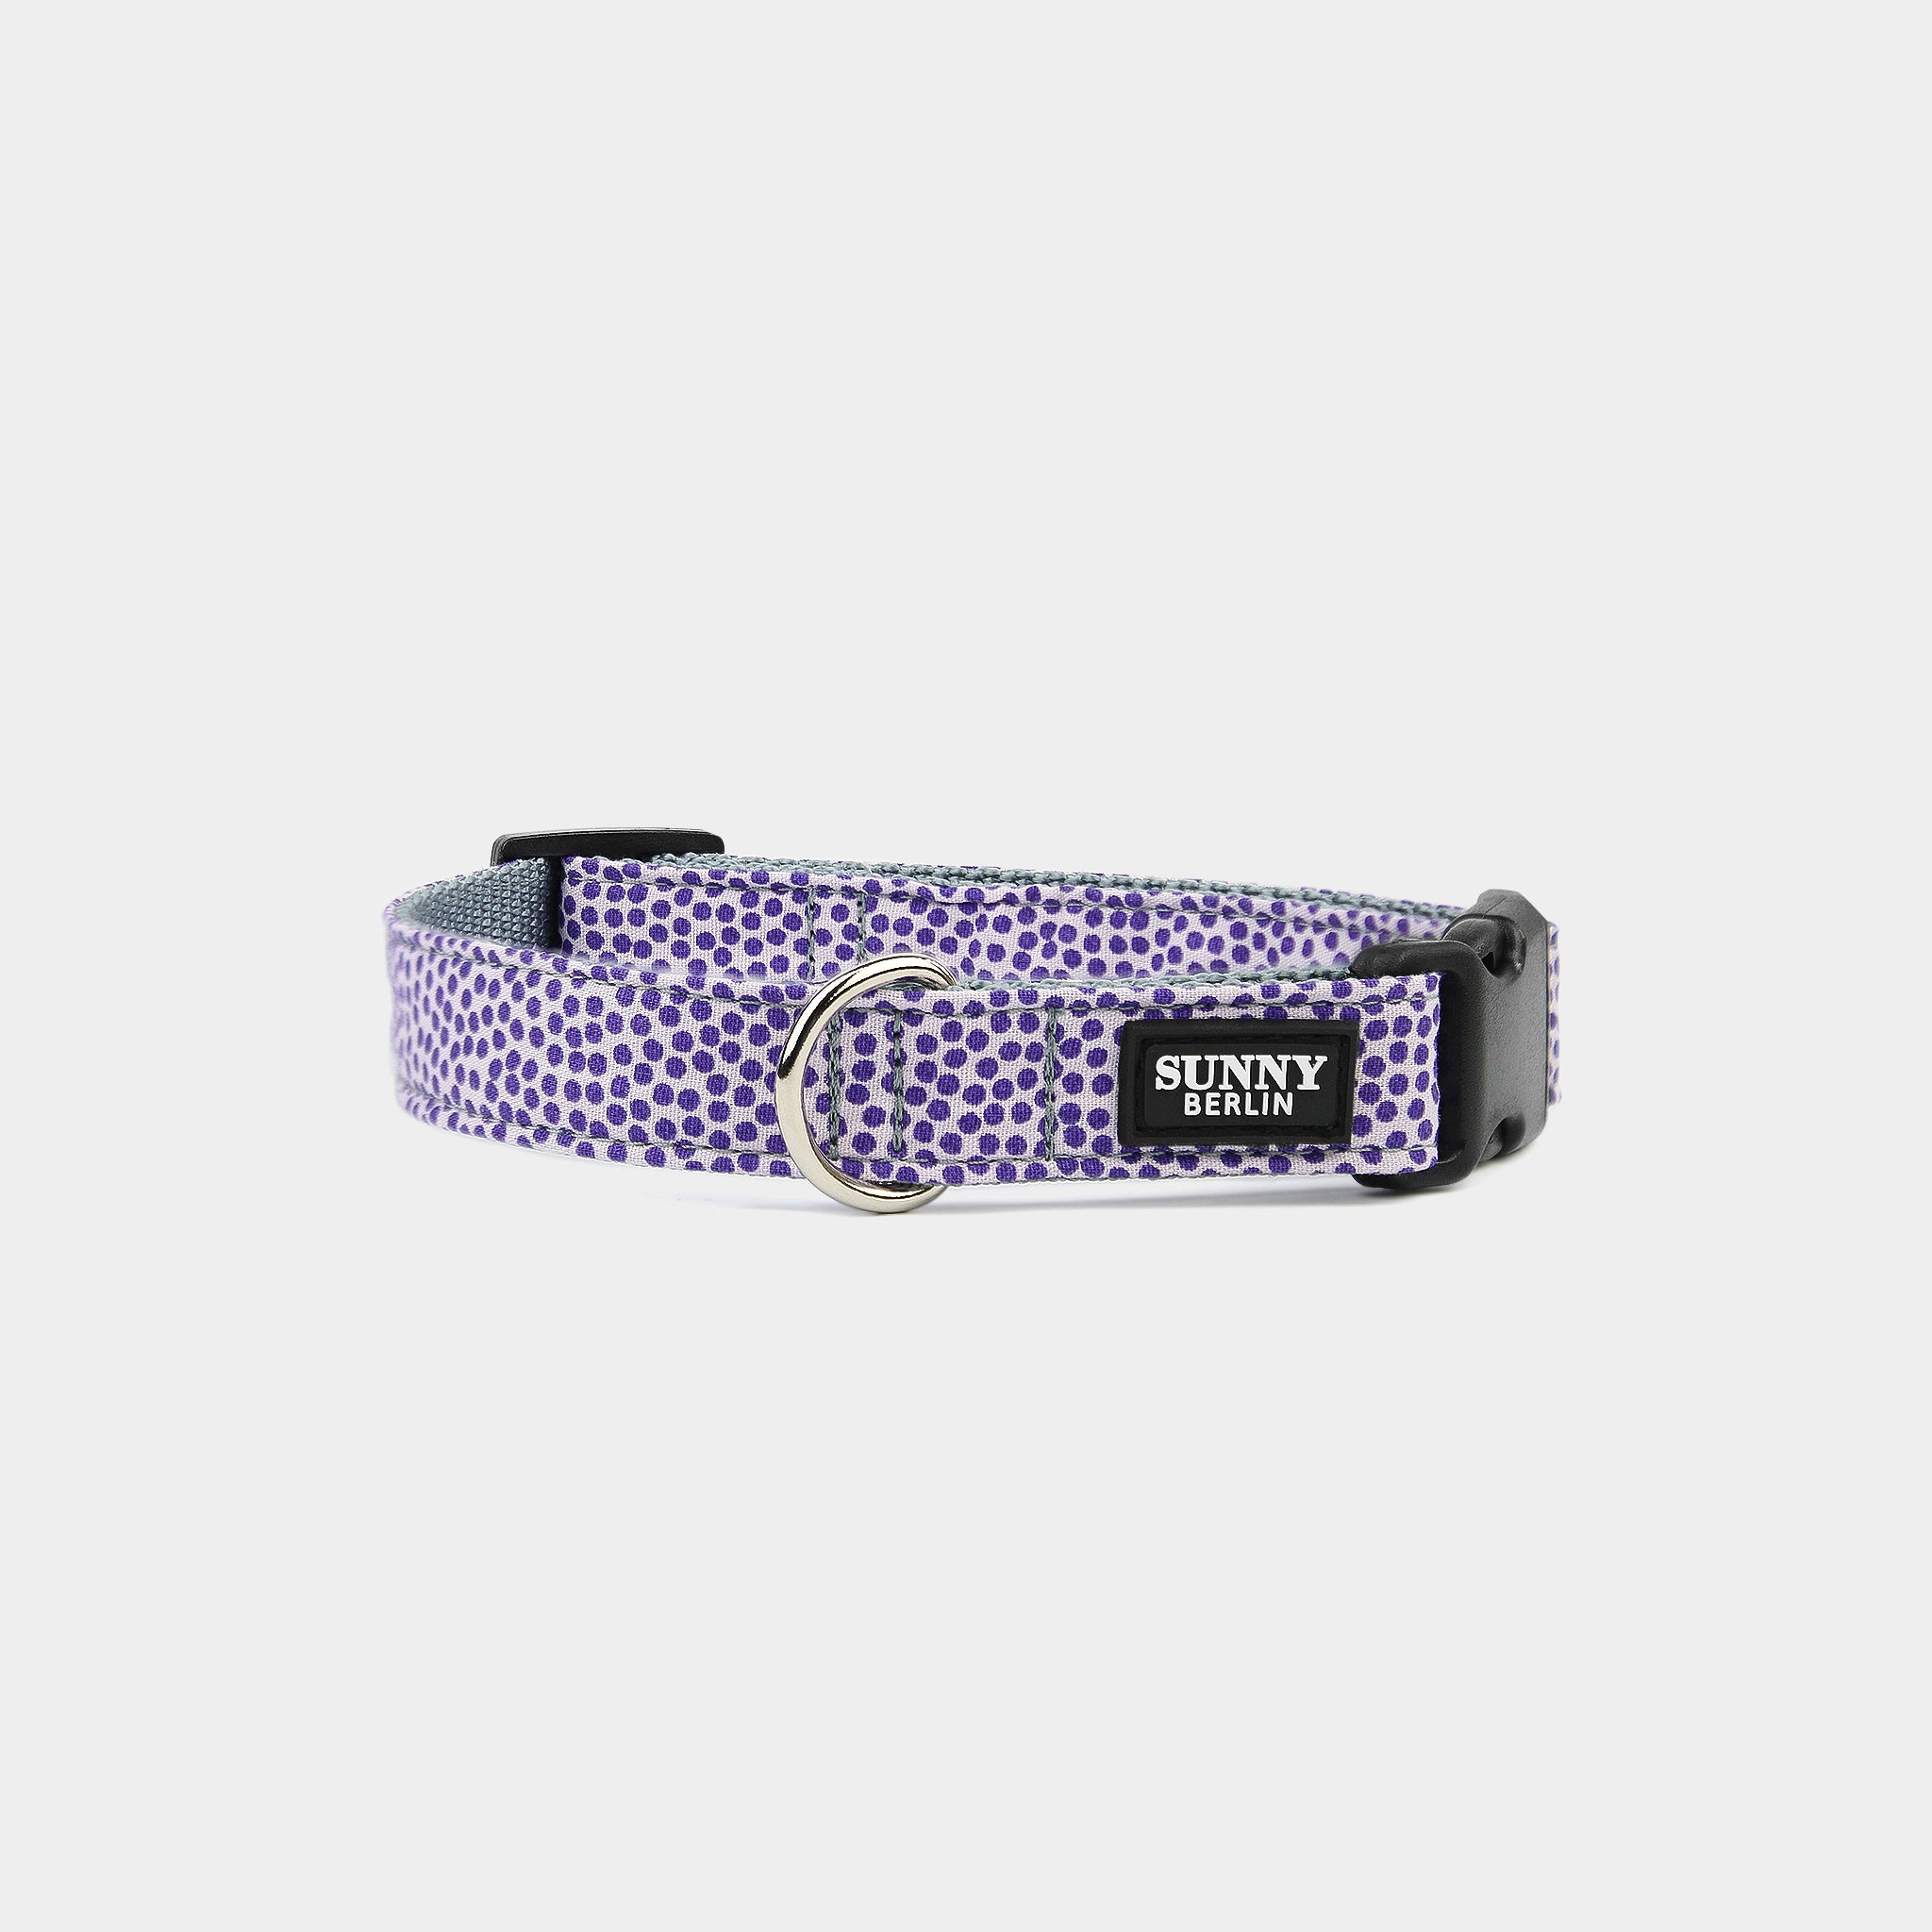 Fliederfarbenes Hundehalsband mit lila Punkten